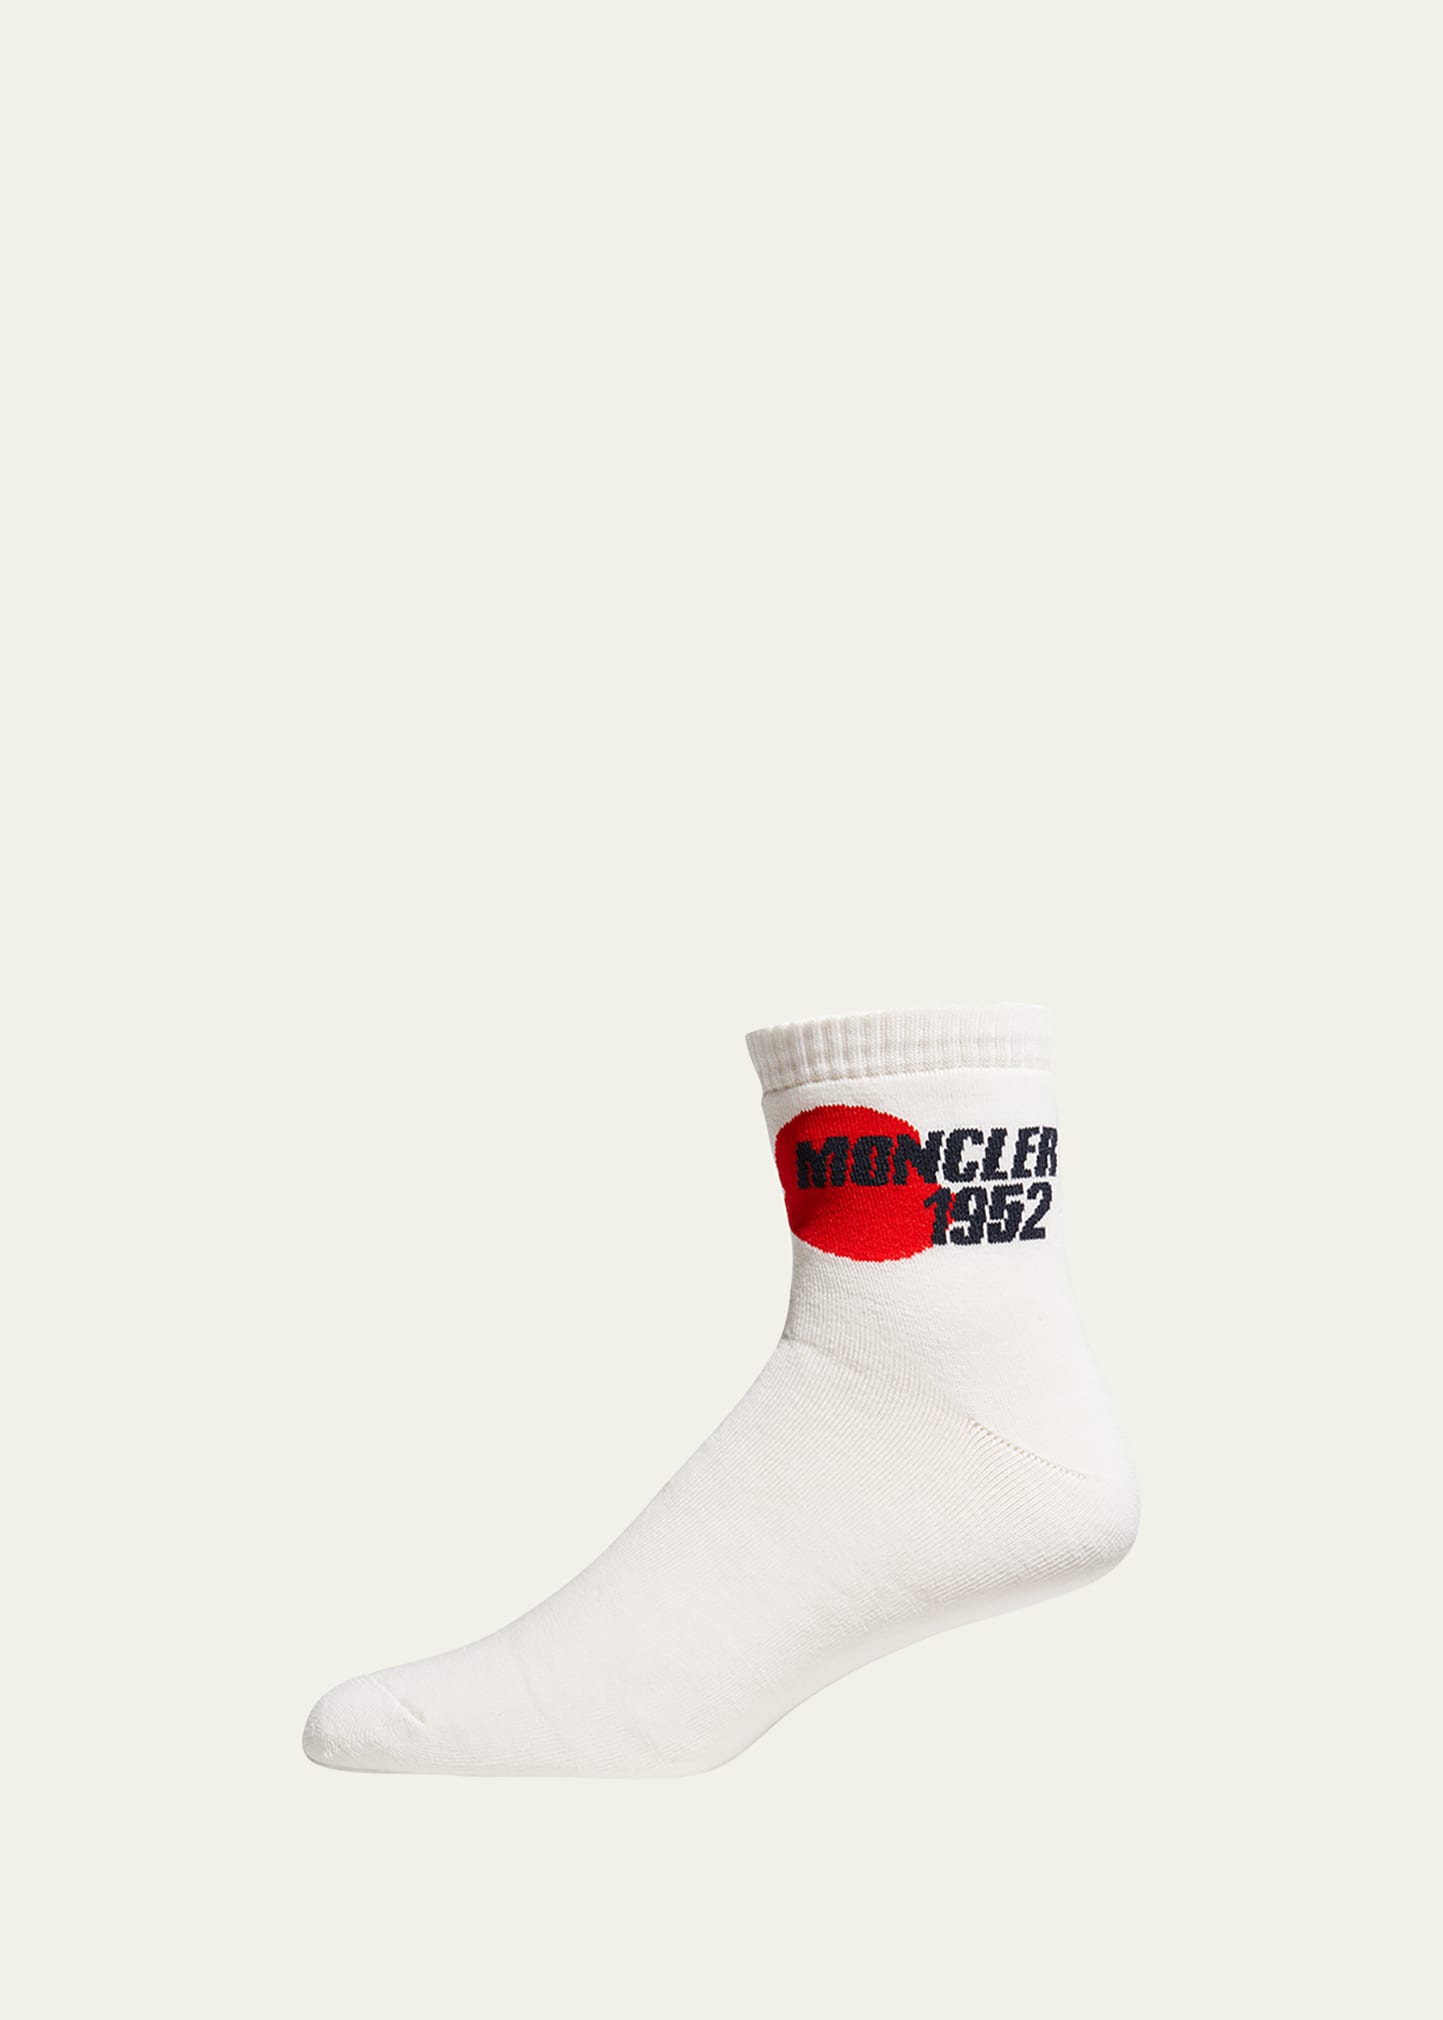 Men's 2 Moncler 1952 Logo Ankle Socks